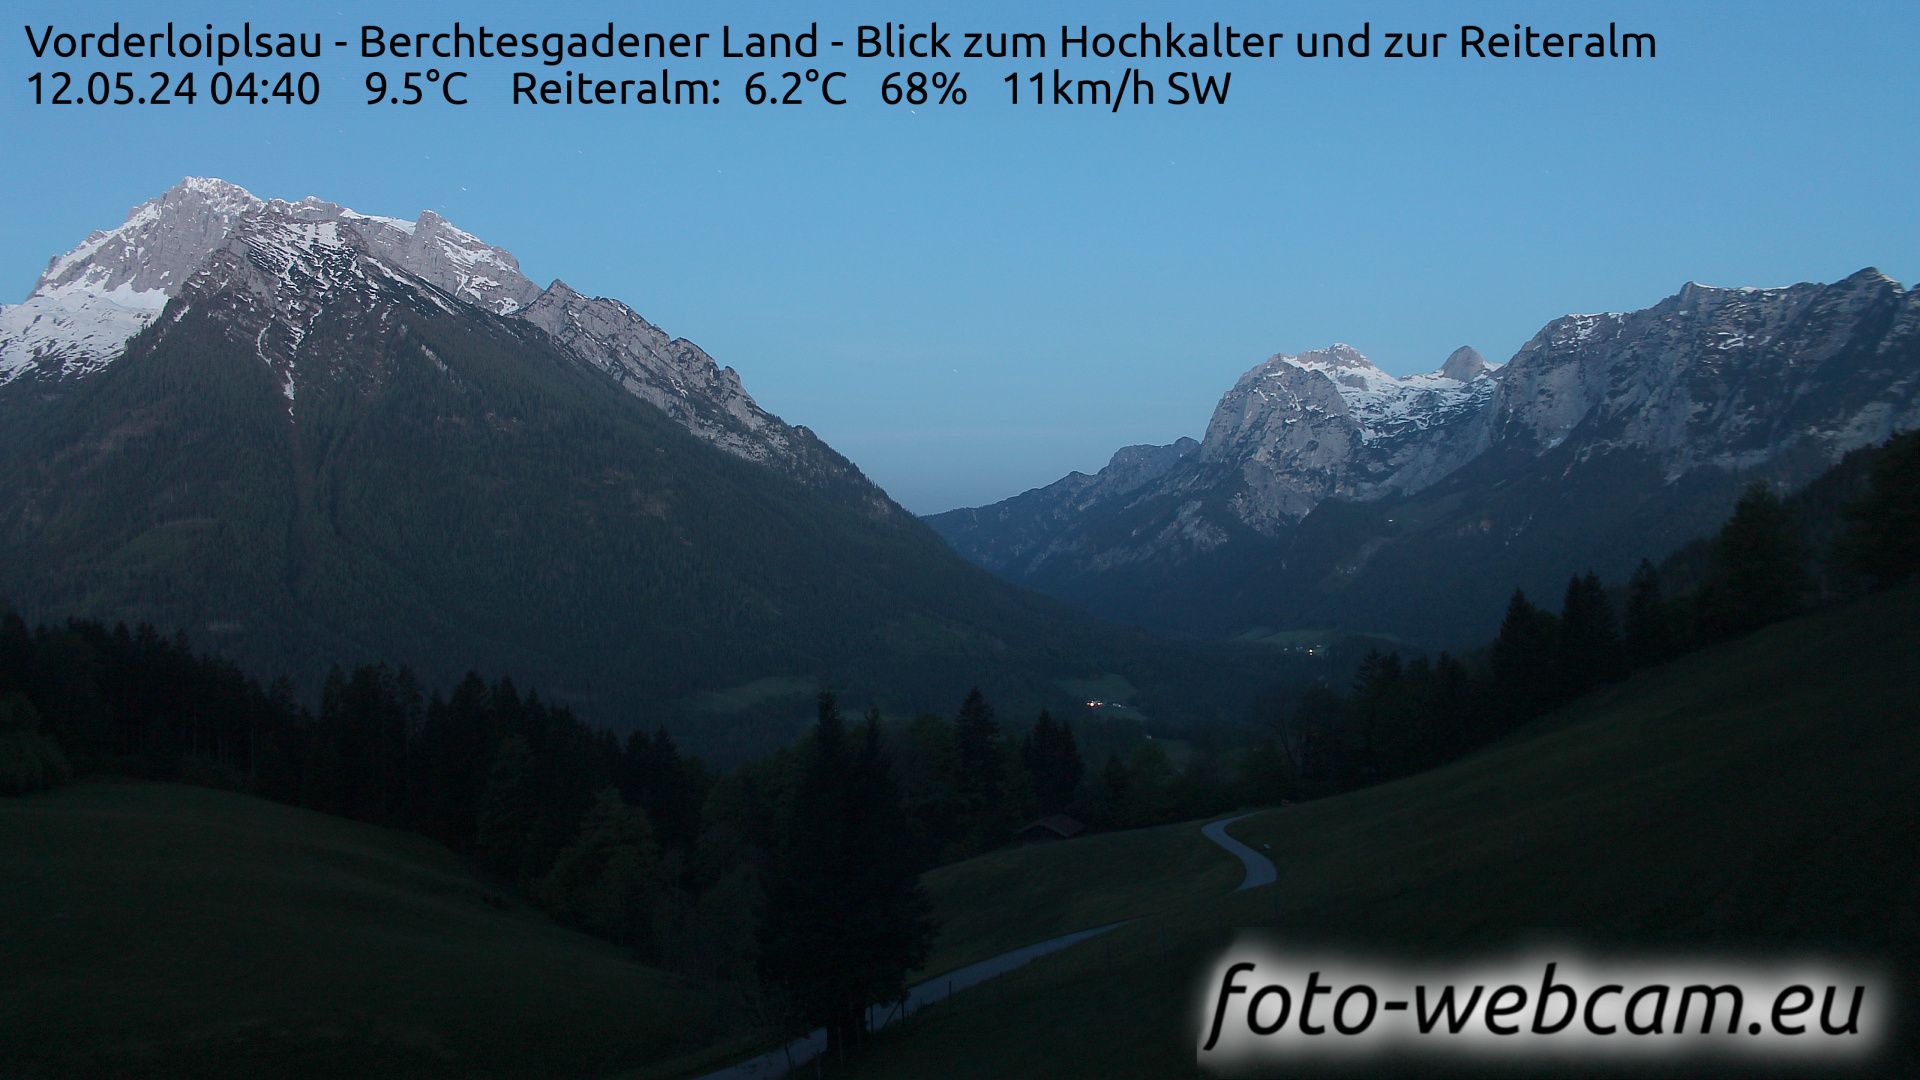 Ramsau bei Berchtesgaden Thu. 04:48